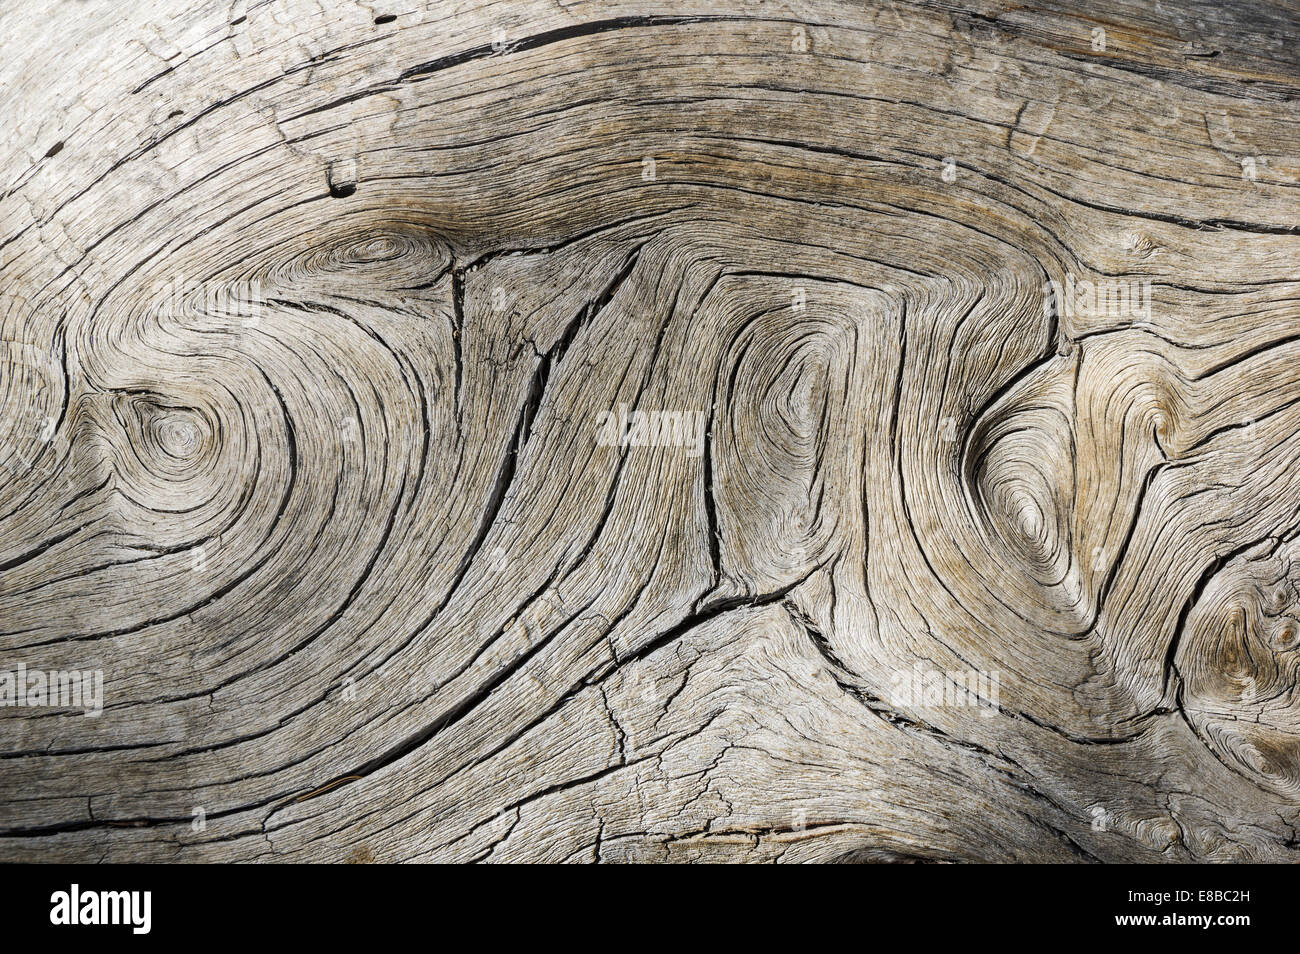 En bois gris patiné avec texture grain tourbillonné Banque D'Images